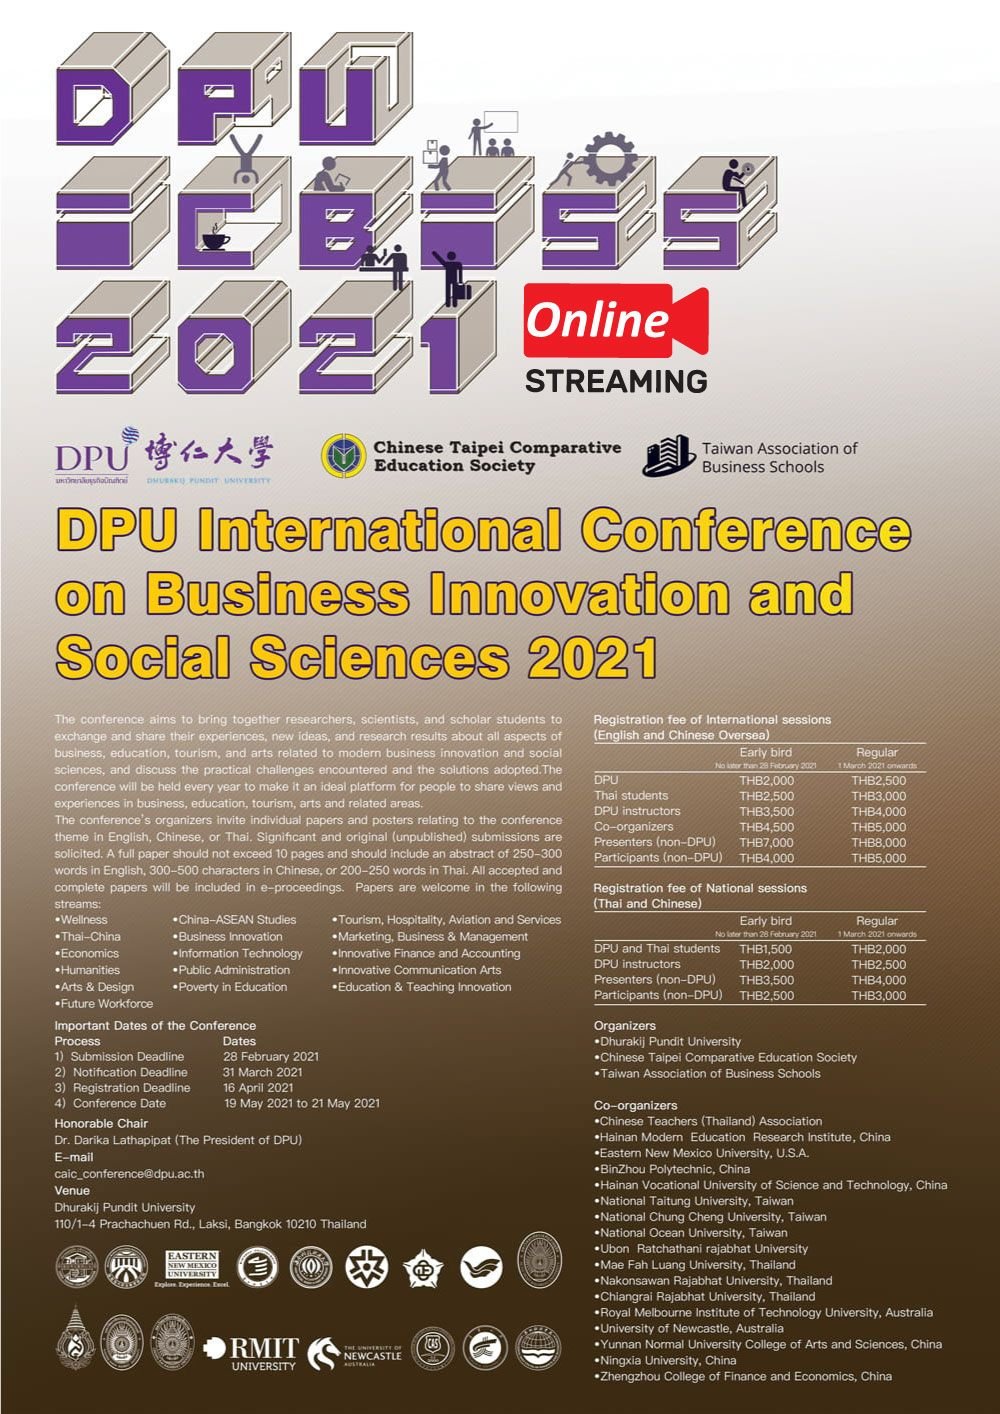 งานประชุมวิชาการระดับชาติและนานาชาติขึ้น ชื่องาน DPU International Conference on Business Innovation and Social Sciences 2021